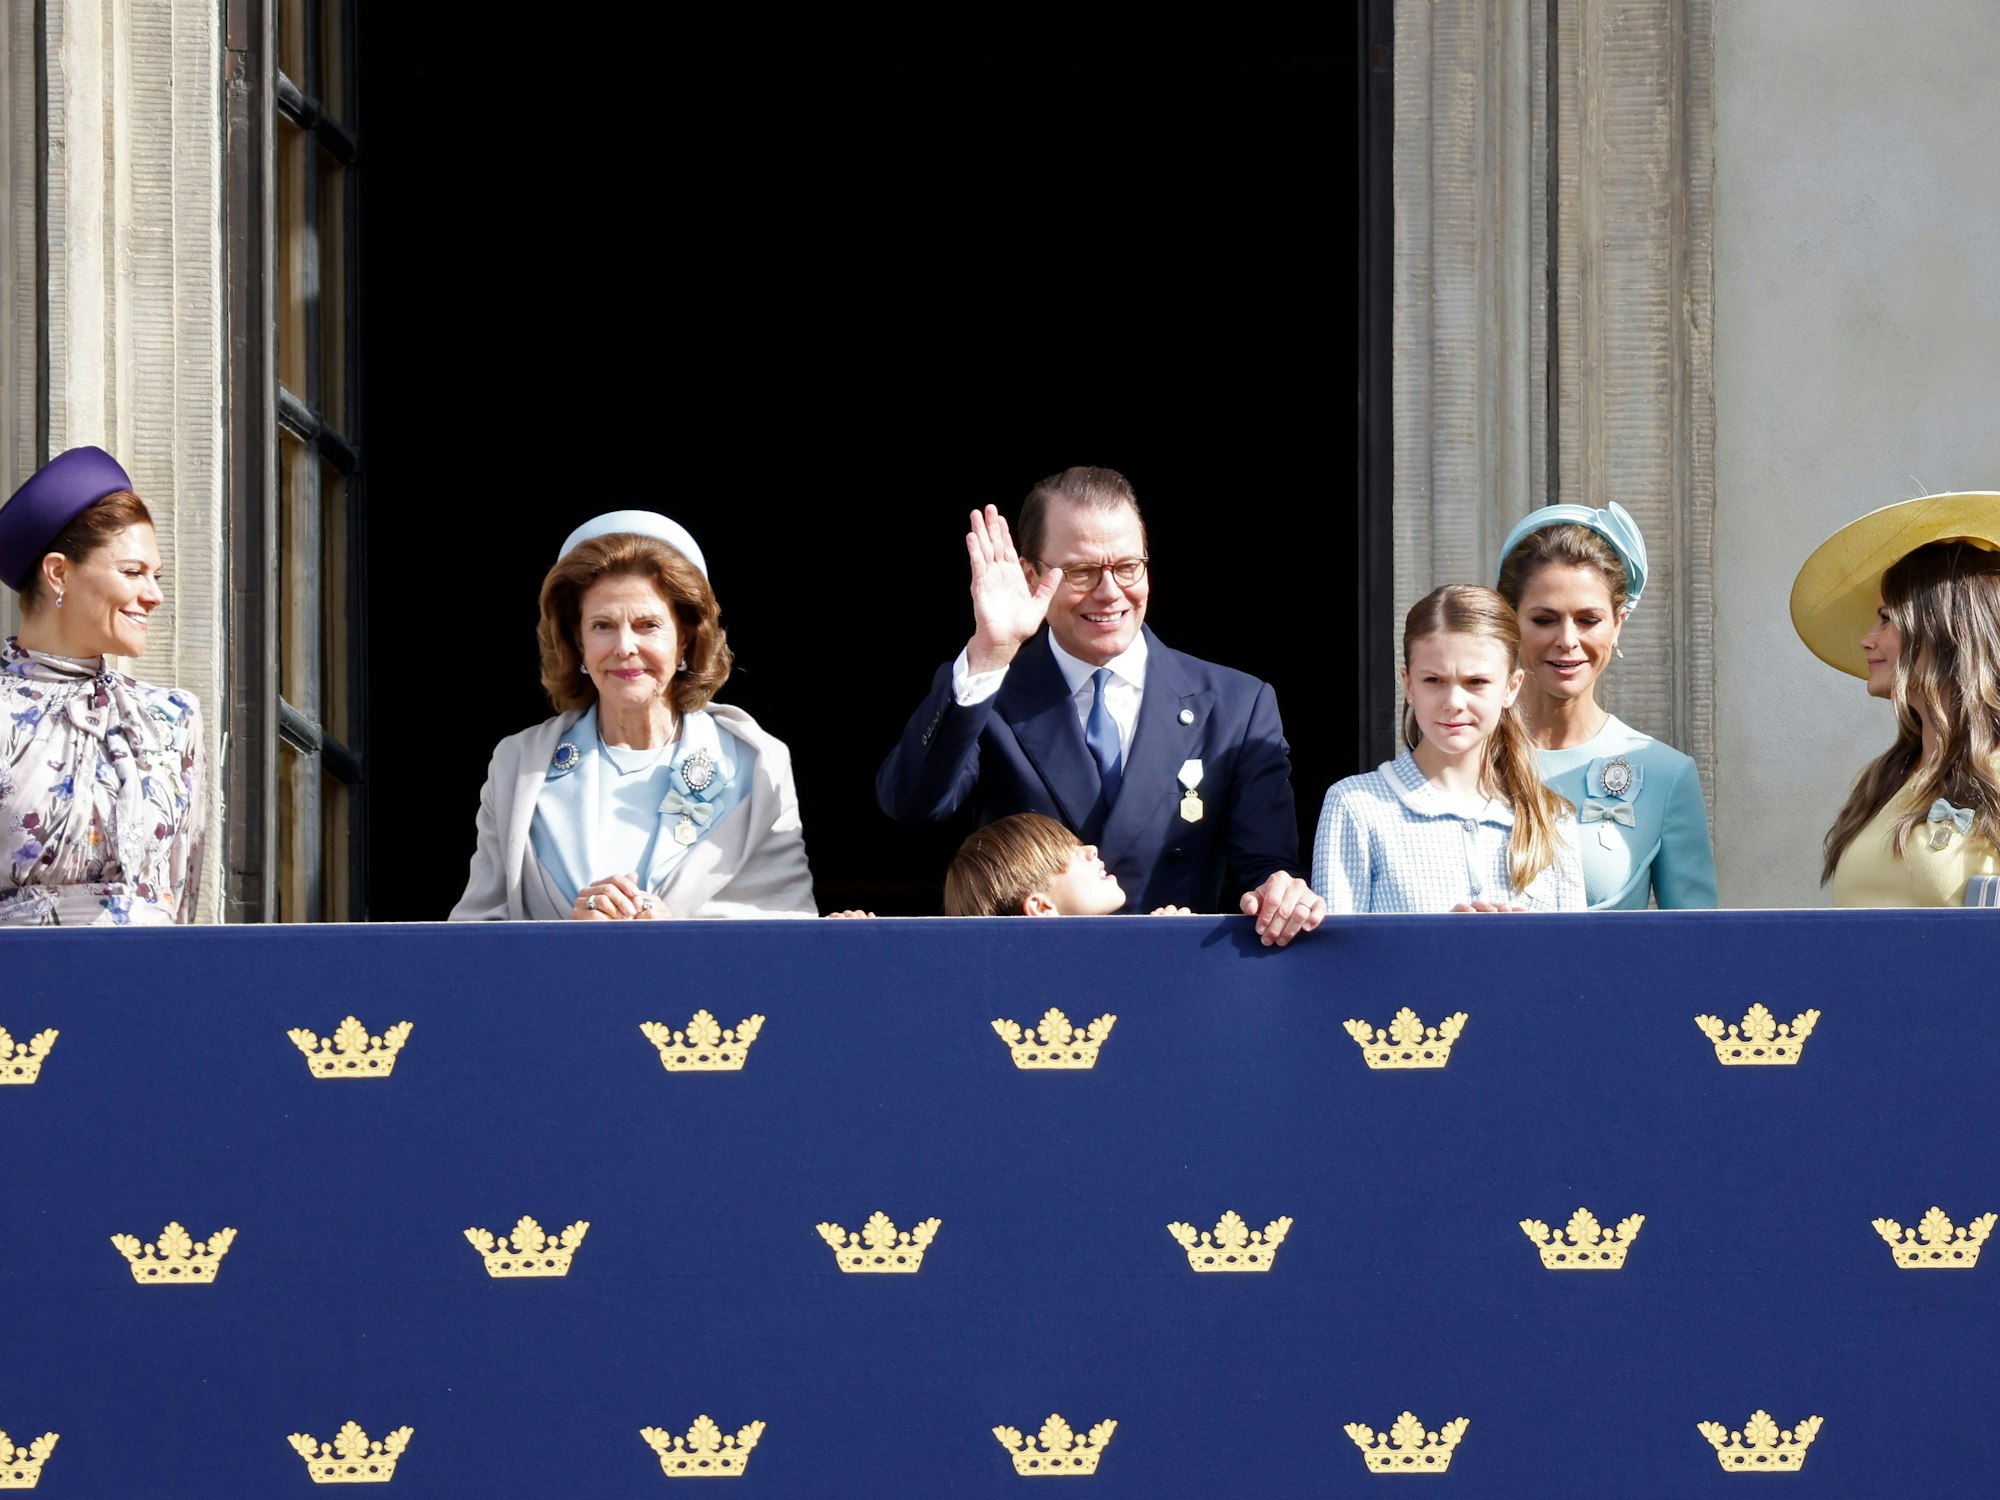 Kronprinzessin Victoria von Schweden, Königin Silvia von Schweden, Prinz Daniel, der heute seinen 50. Geburtstag feiert, Prinzessin Estelle von Schweden, Prinzessin Madeleine von Schweden und Prinzessin Sofia von Schweden beobachten die Wachablösung vom Balkon aus.